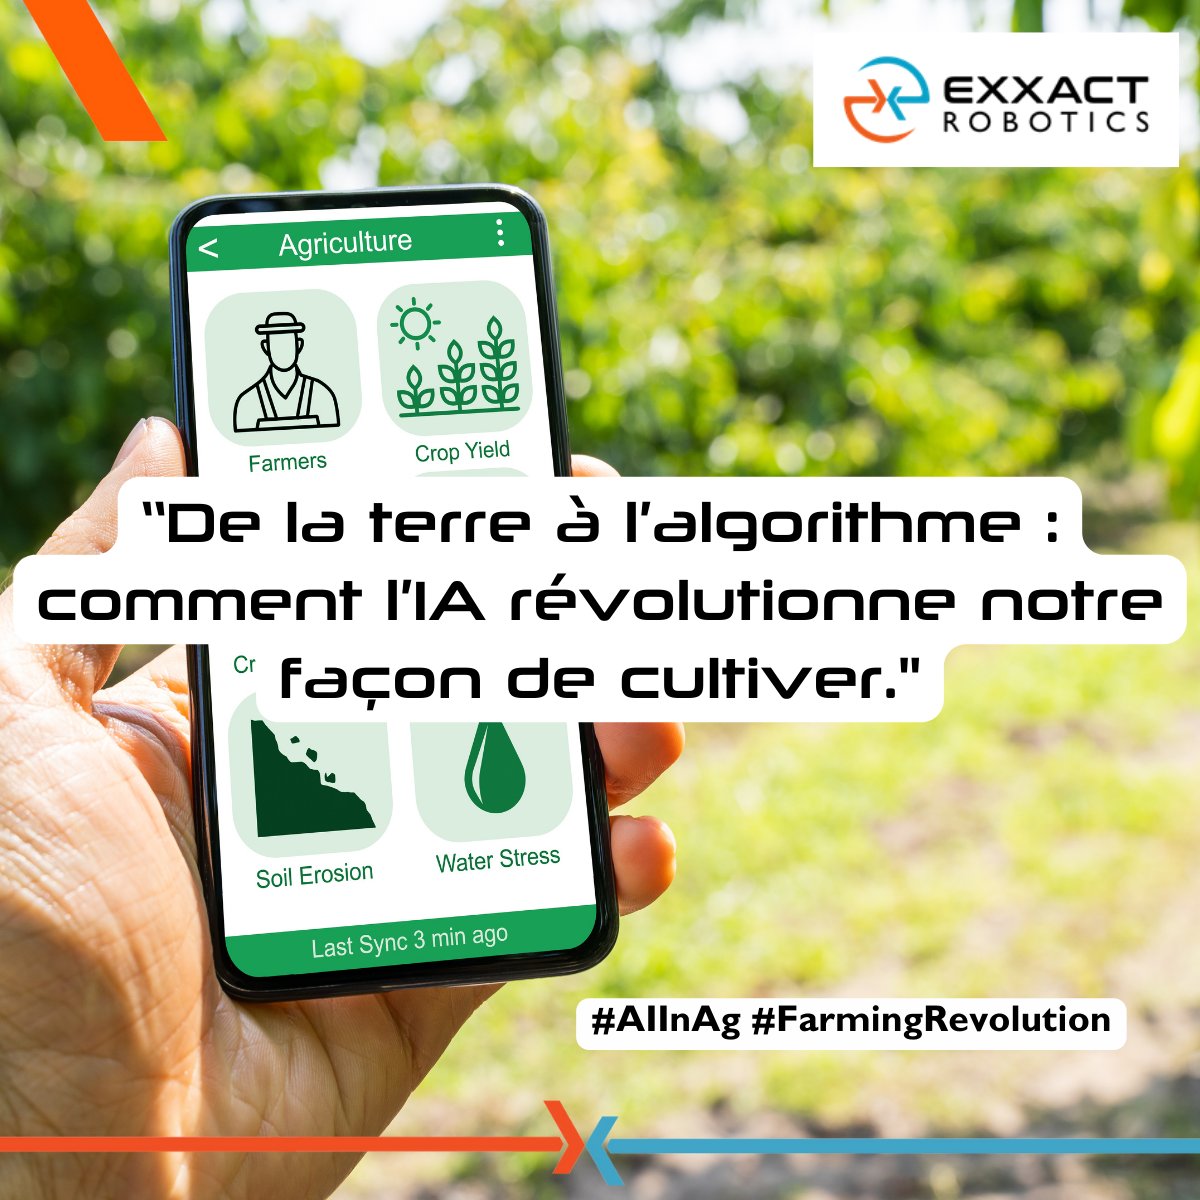 [#PhraseHebdo]
'De la terre à l’algorithme : comment l’IA révolutionne notre façon de cultiver'
Chez @ExxactR, nous pensons que l'IA est un outil qui aide nos agriculteurs à mieux travailler!
#AIInAg #FarmingRevolution #iA